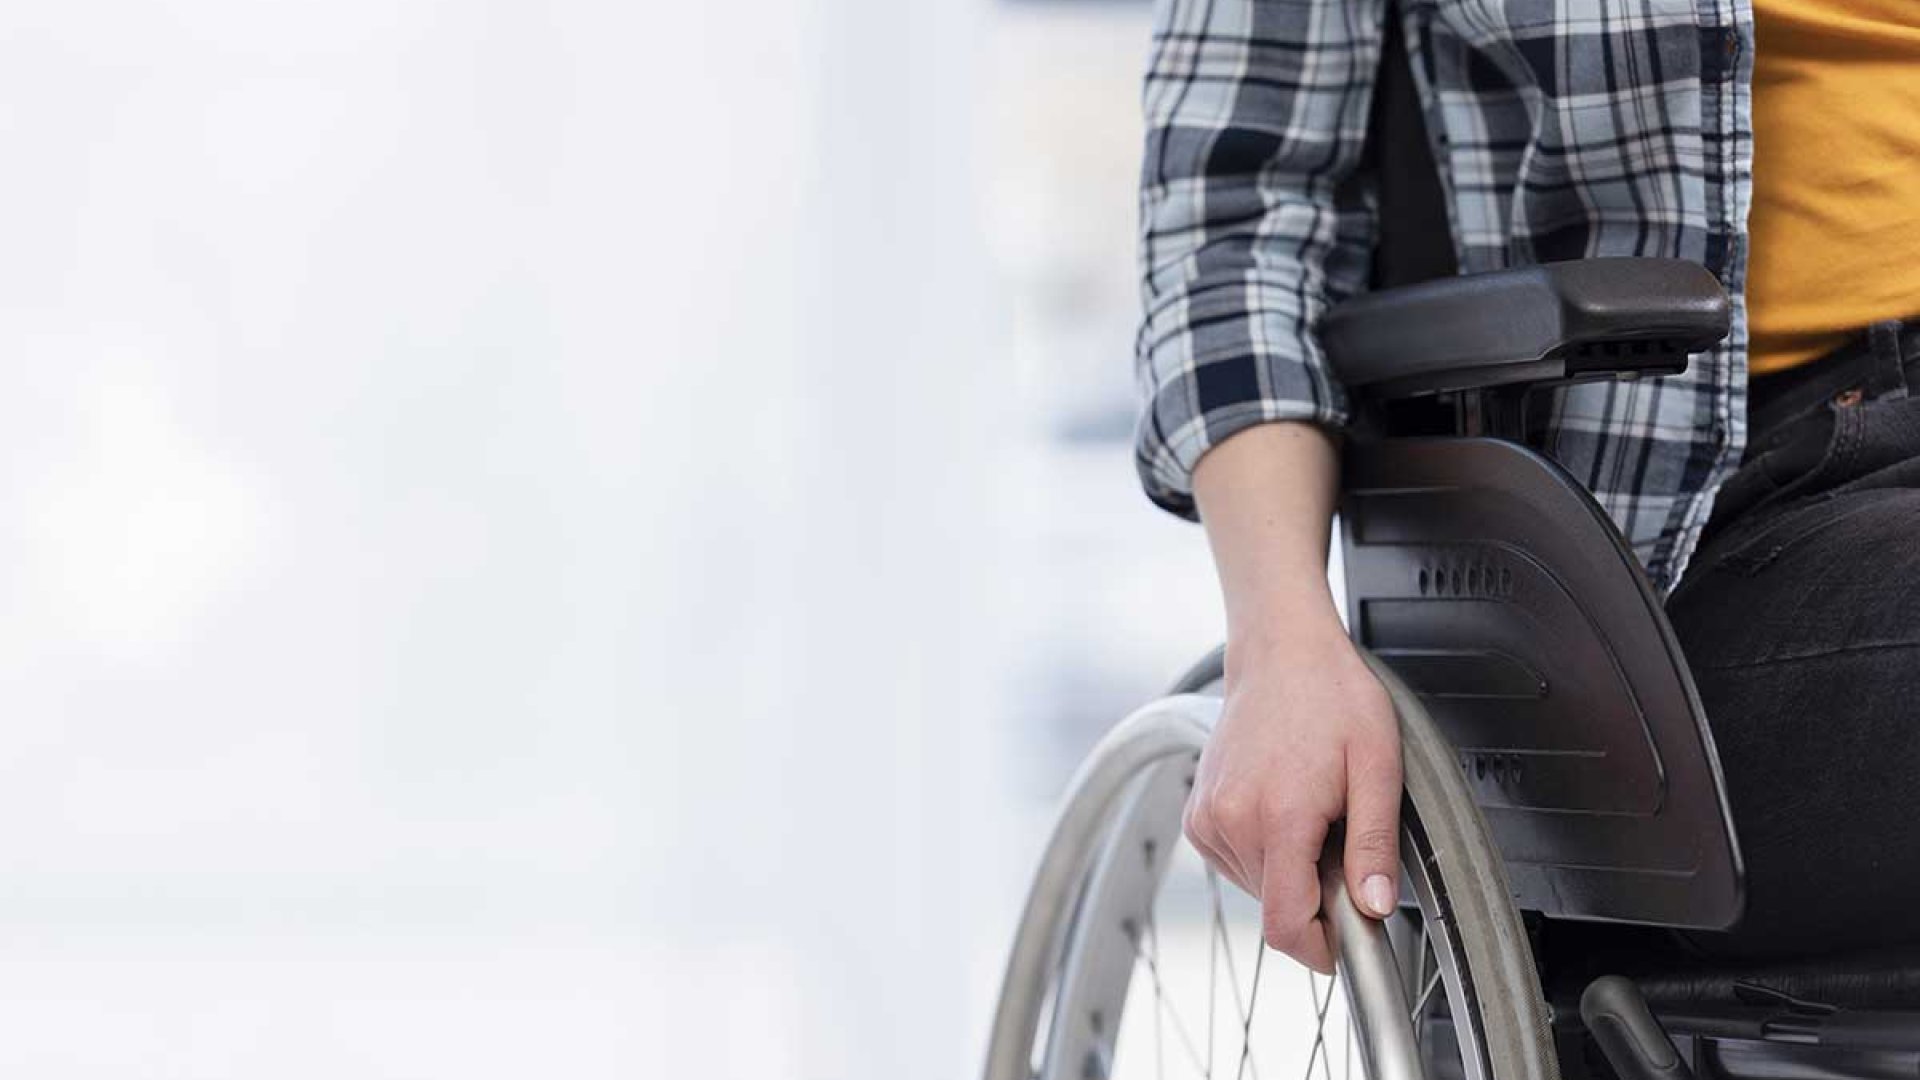 Personas con Discapacidad